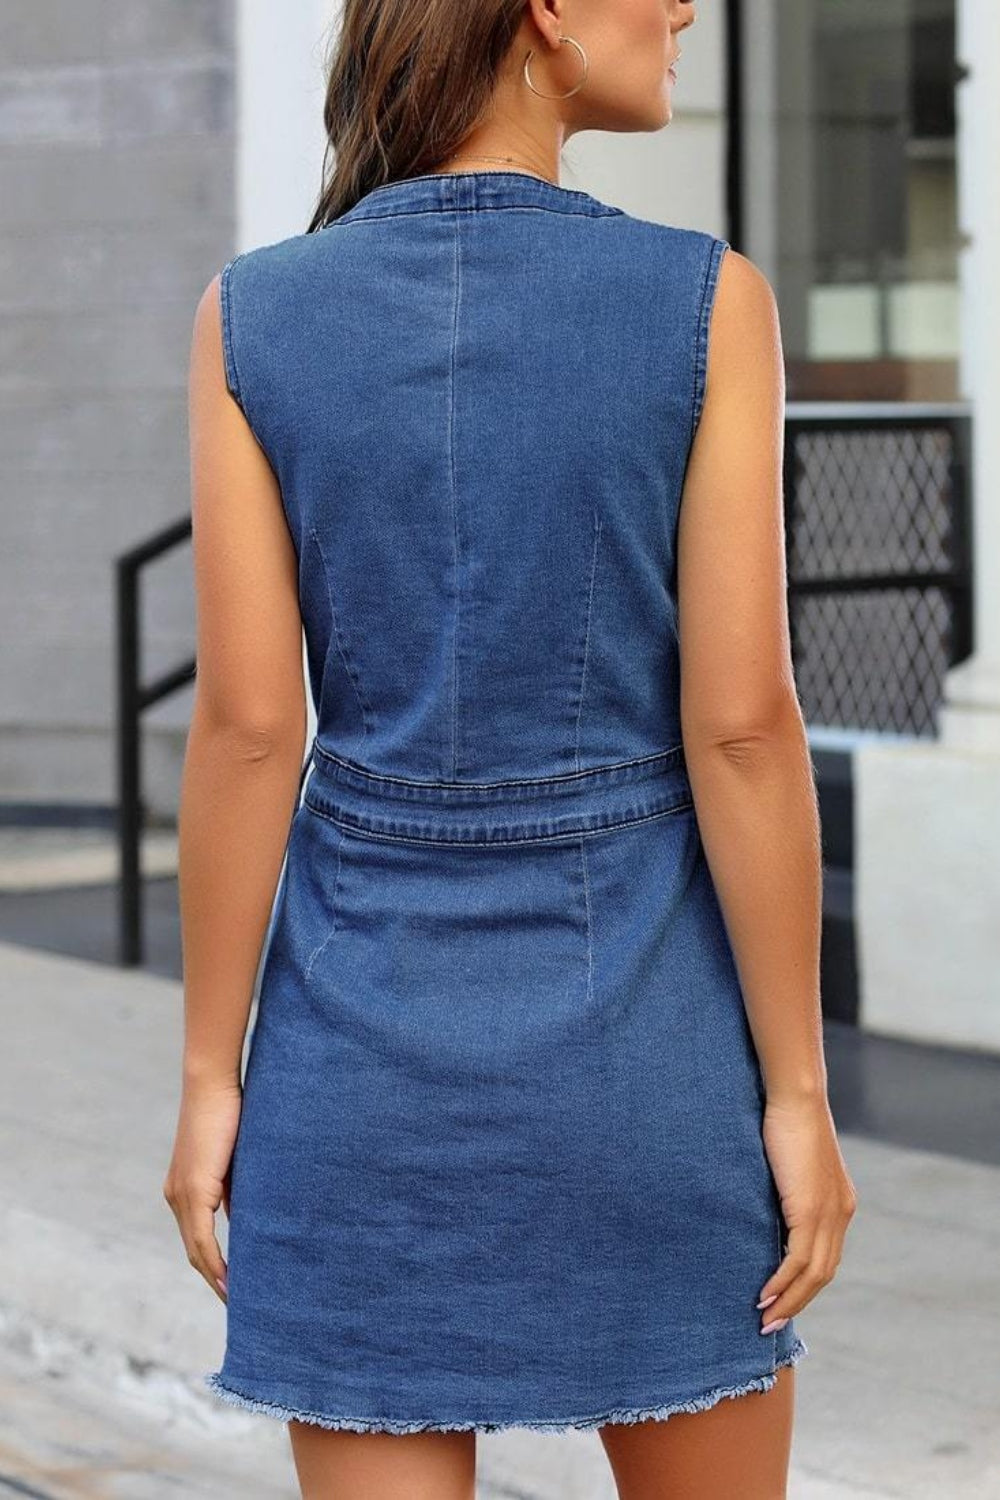 Denim Button Up Sleeveless Dress | Denim Shirt Dress Women | Blue Jean Dress